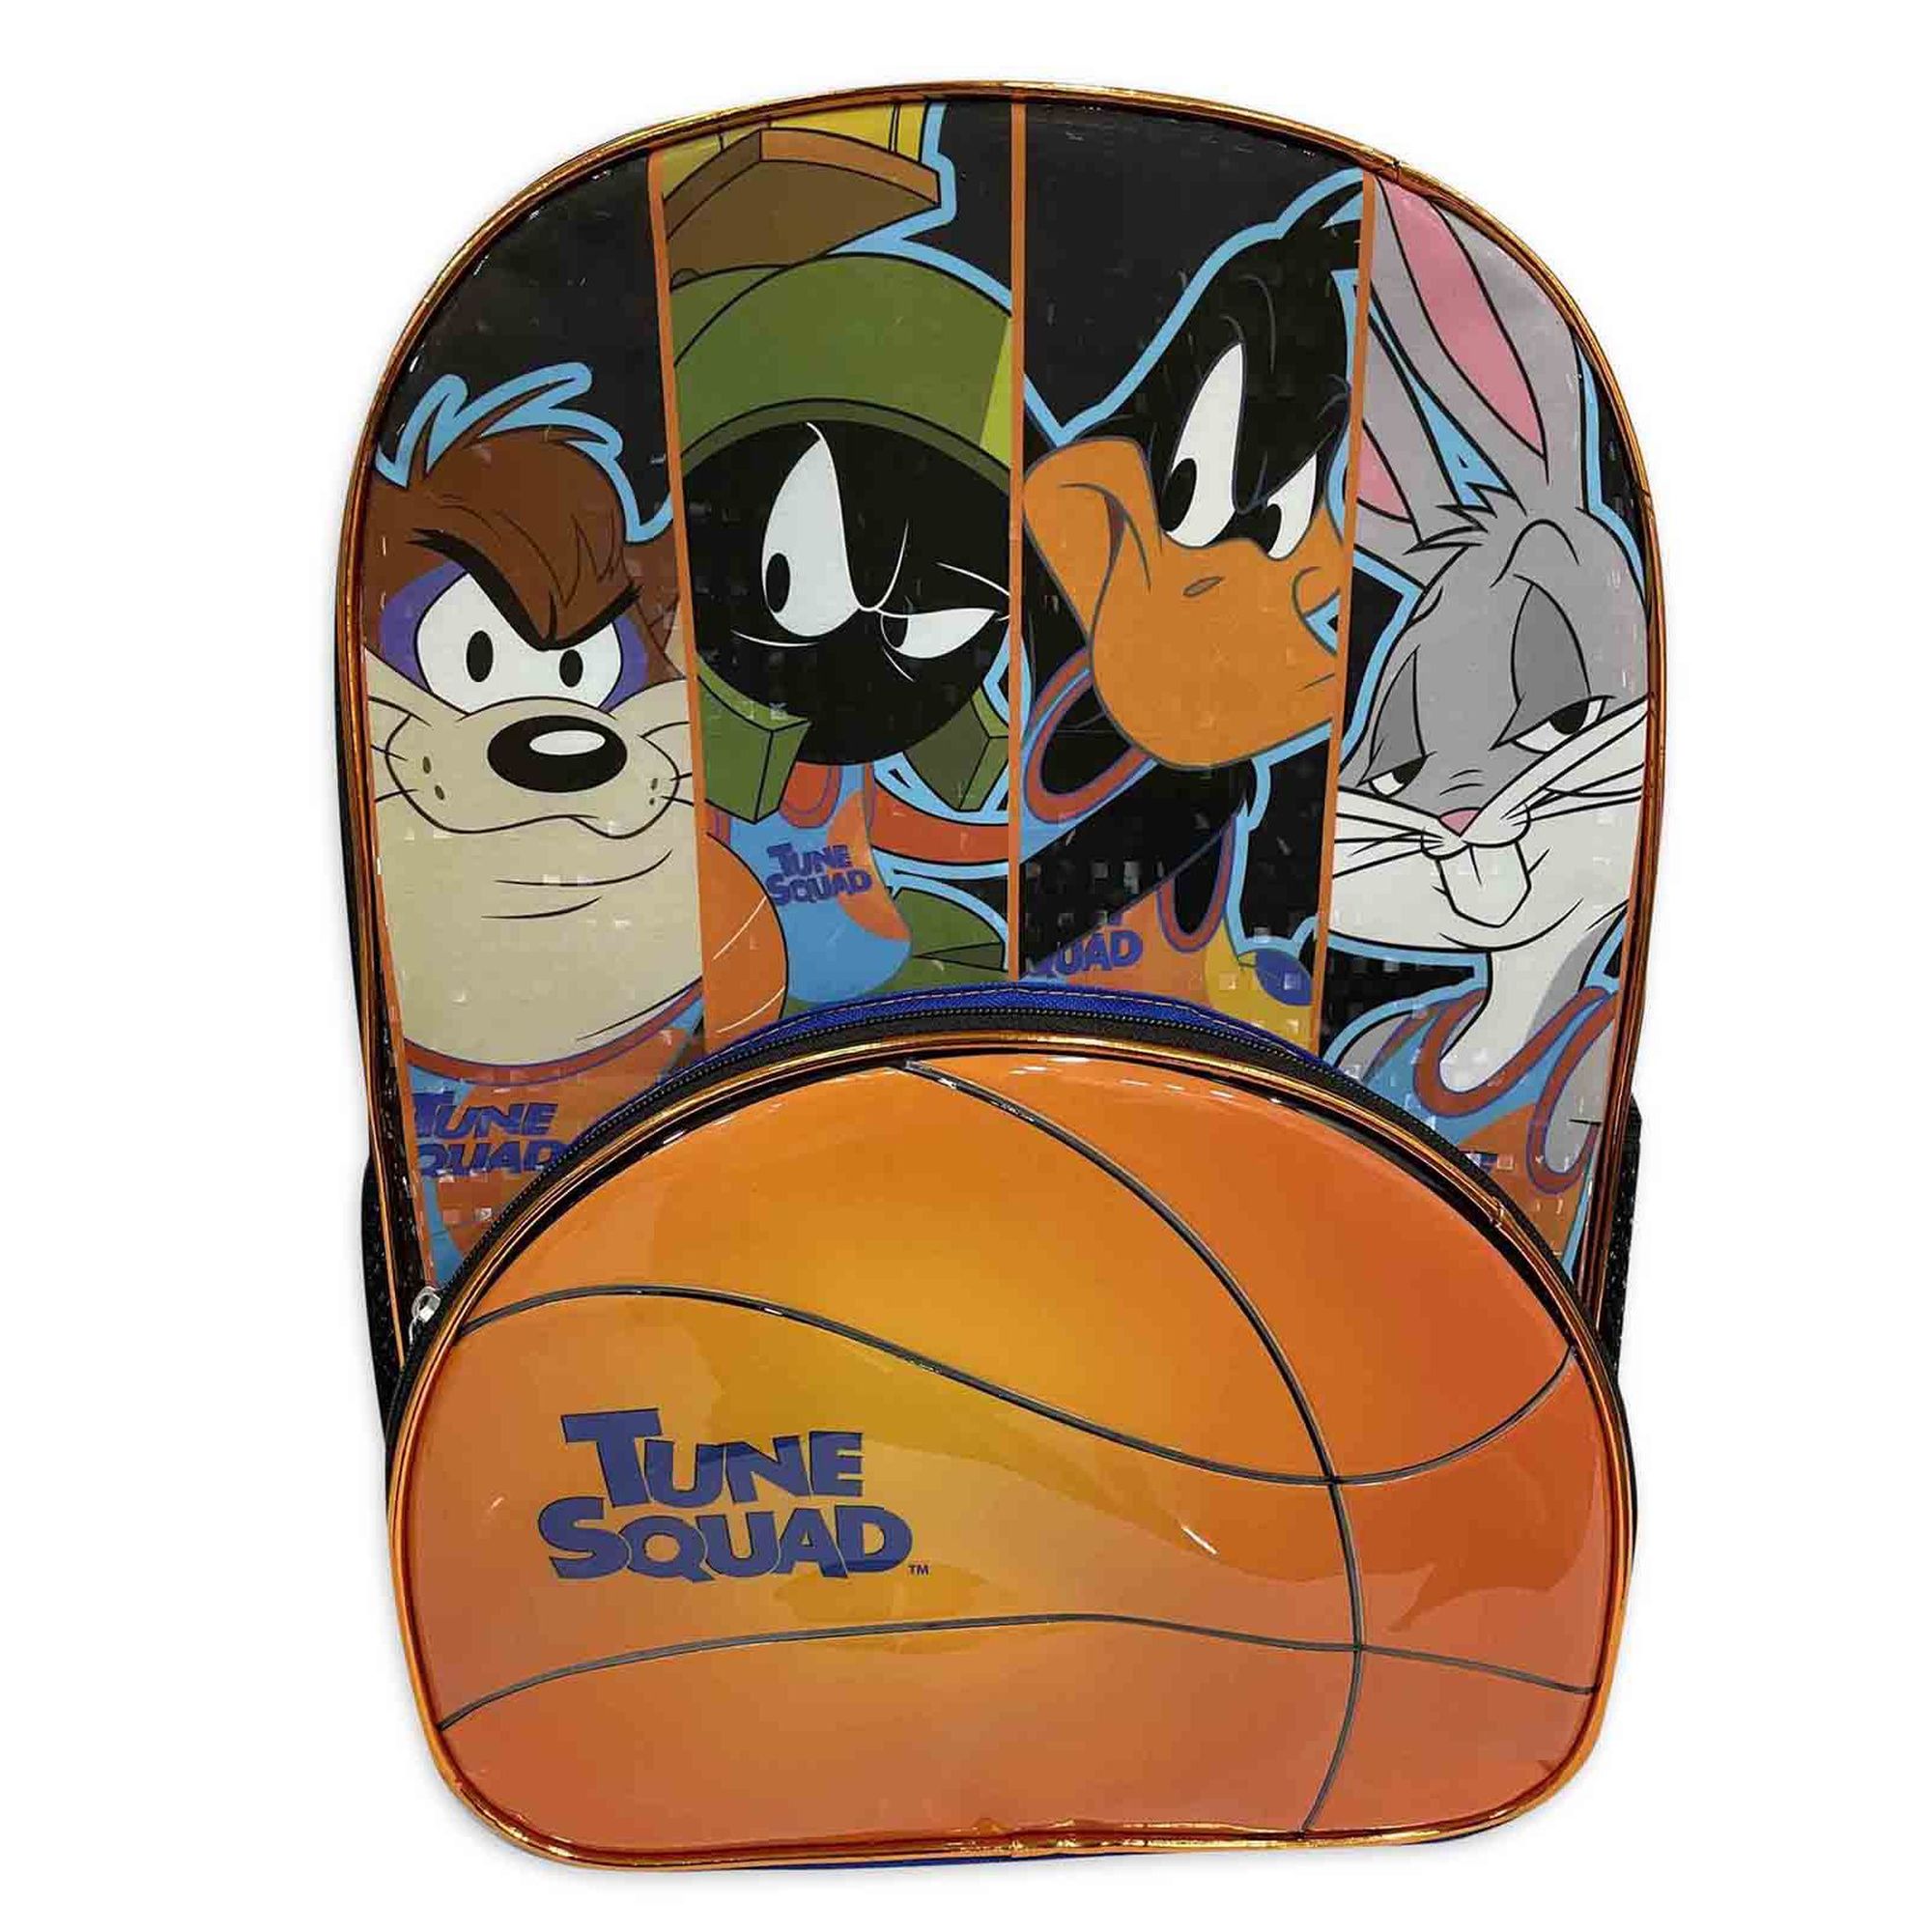 Warner Brothers Warner Bros. Looney Tunes Space Jam Tune Squad 17" Backpack, School Bag